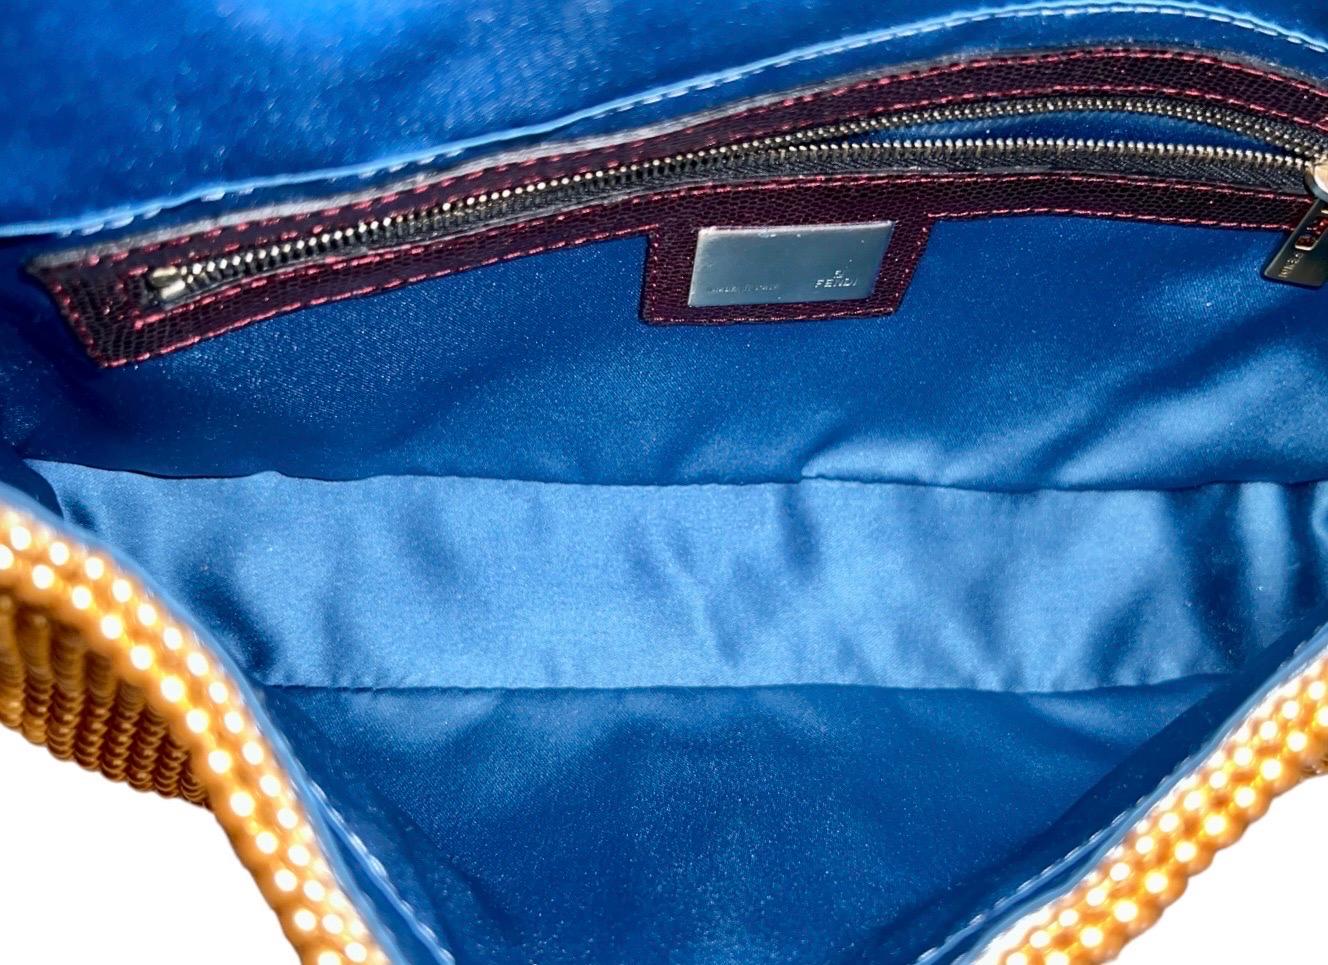 UNWORN Fendi Embroidered Golden Baguette Handbag Flap Bag Clutch - Full Set 11